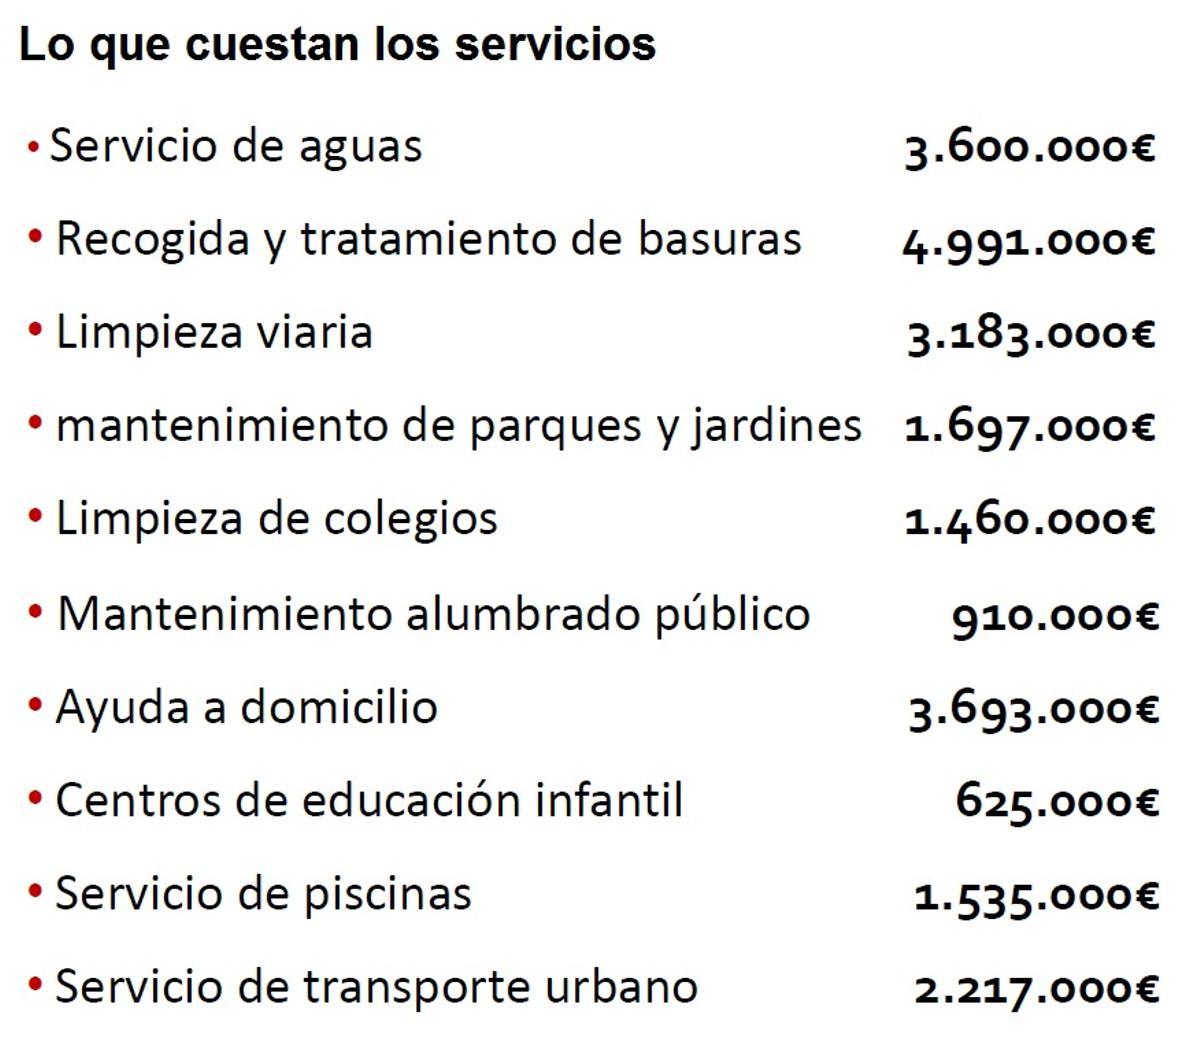 Lo que cuestan los servicios municipales en Zamora